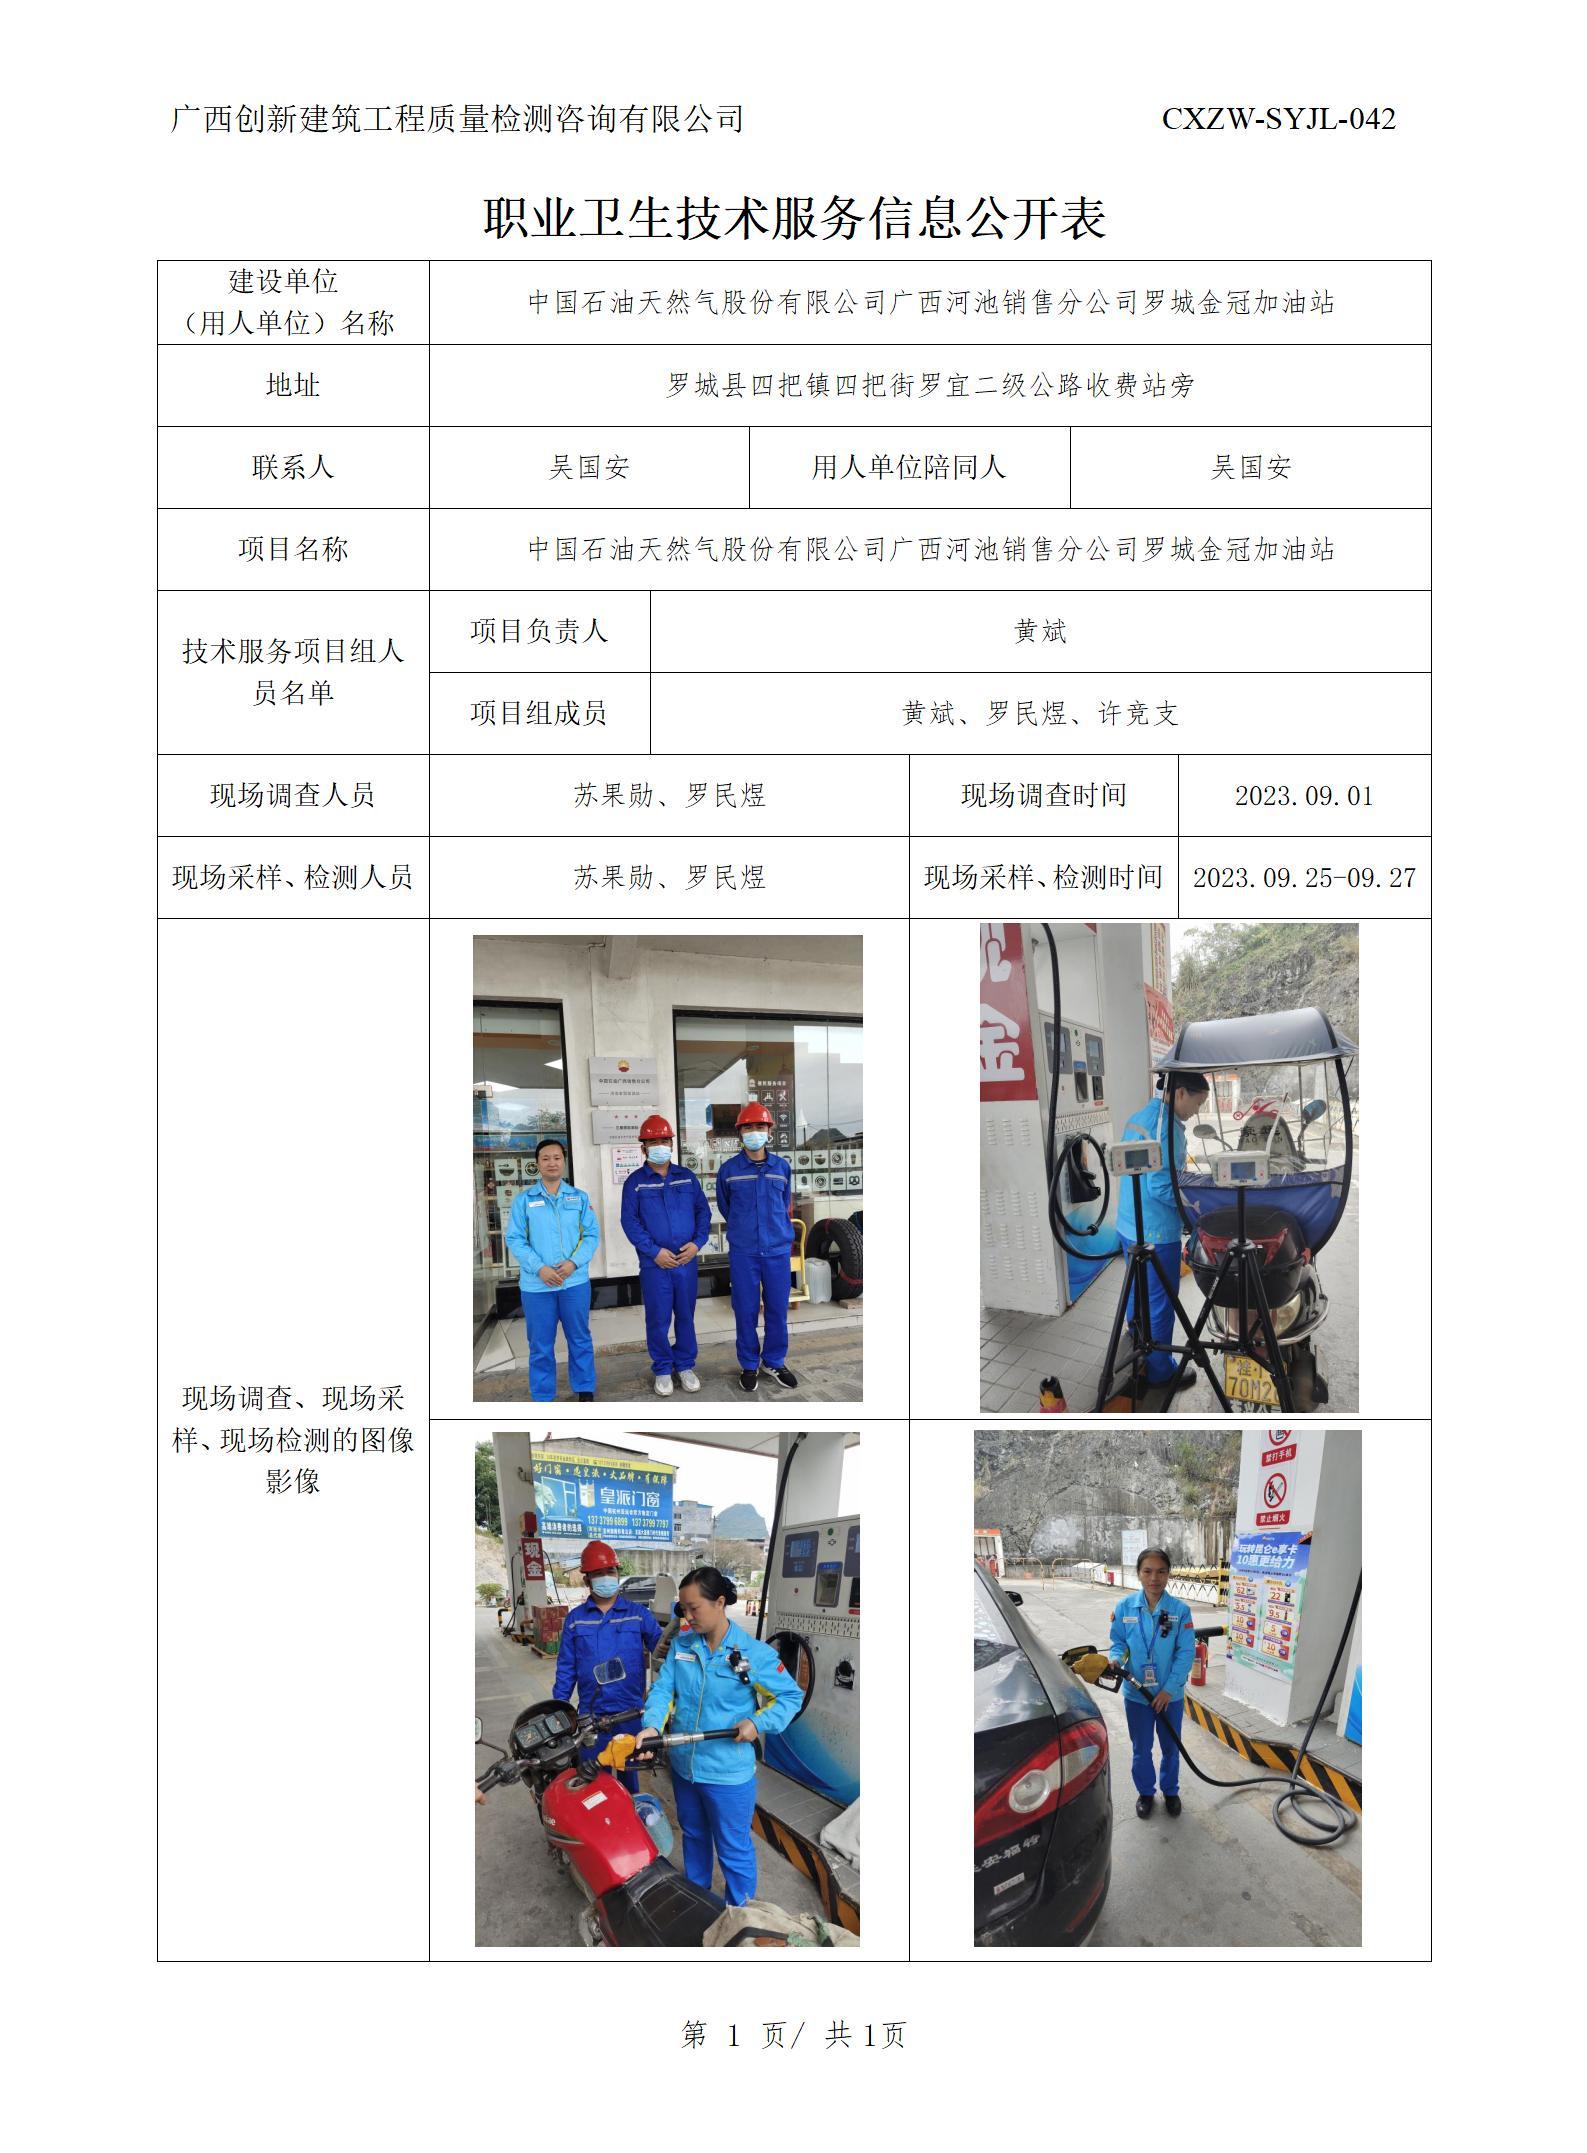 【职业卫生信息公开】中国石油天然气股份有限公司广西河池销售分公司罗城金冠加油站